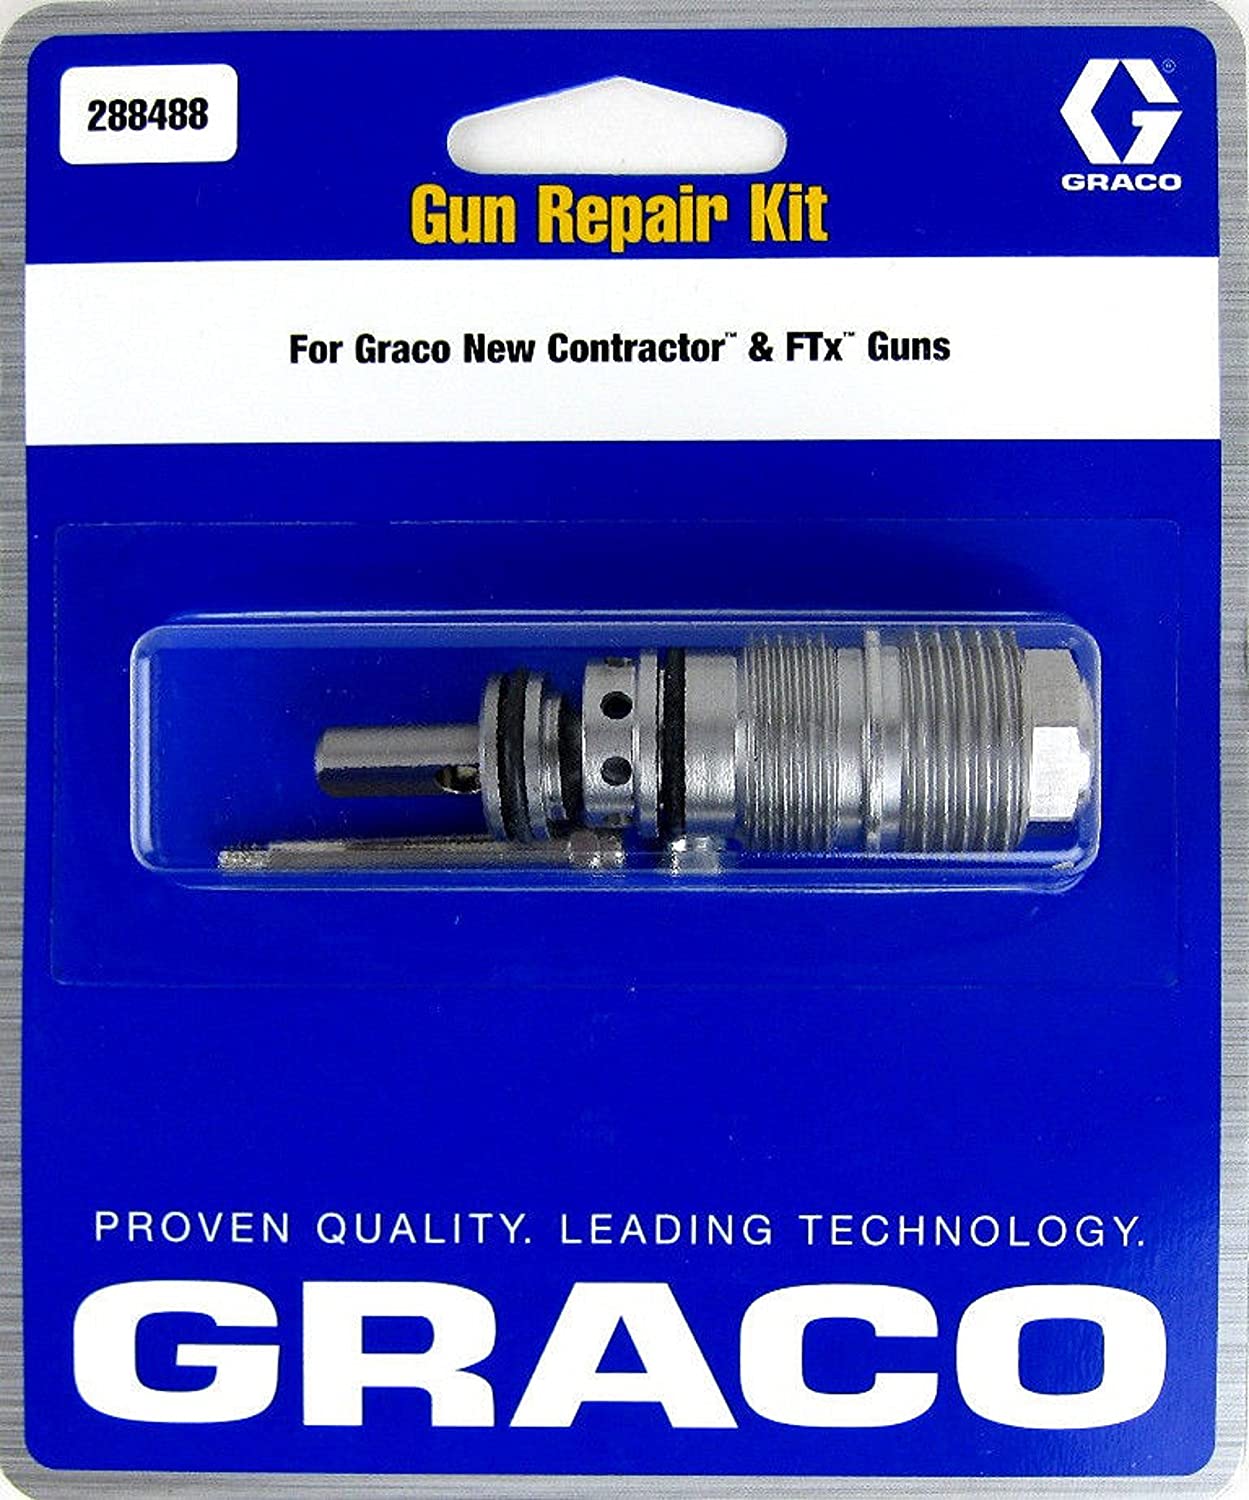 Graco OEM Airless Gun Repair Kit 288488 for Contractor & FTx